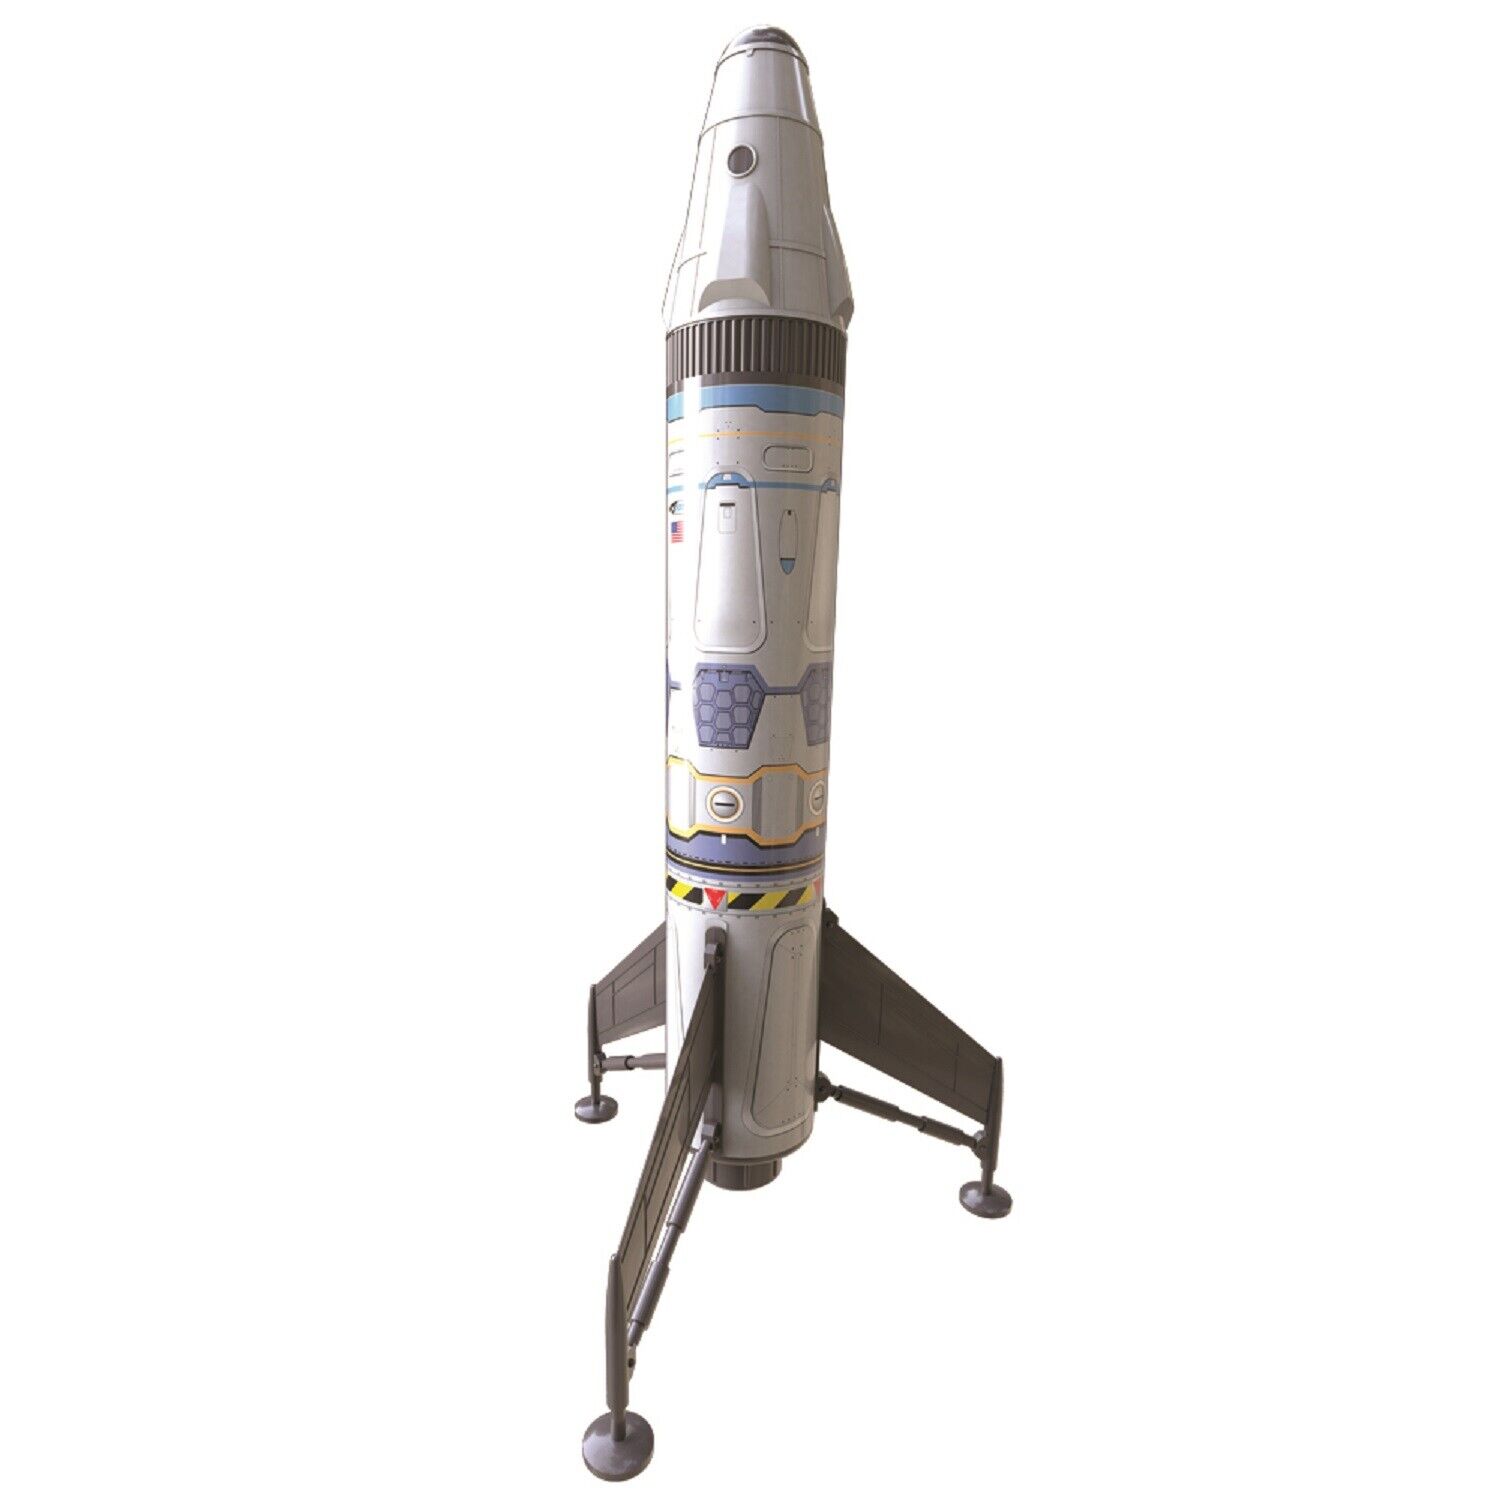 Beginner Estes Mav Rocket Kit | Ready to Fly